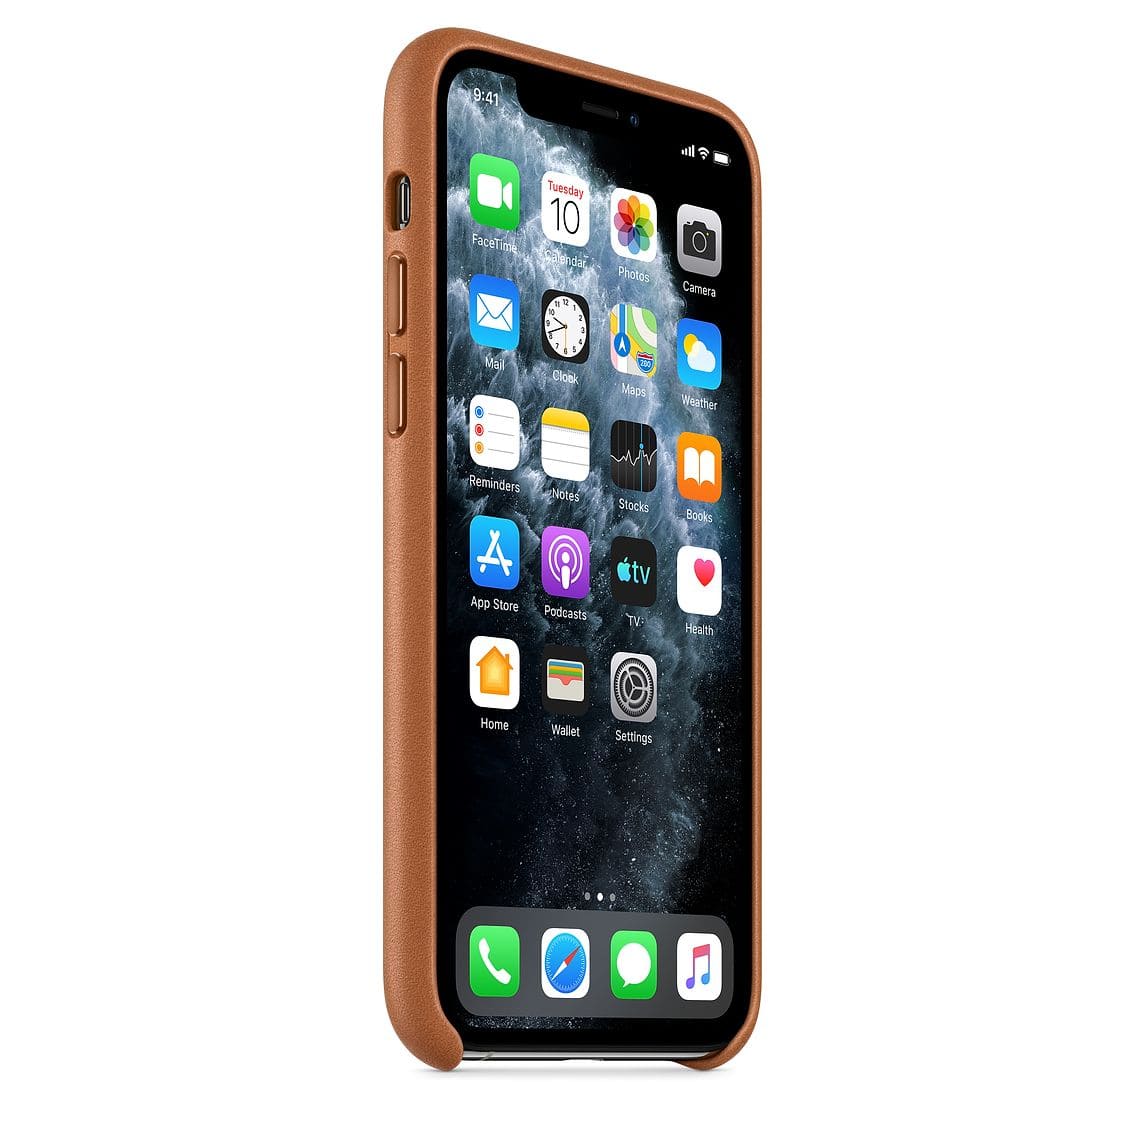 Чехол для смартфона Apple для iPhone 11 Pro Leather, золотисто-коричневый